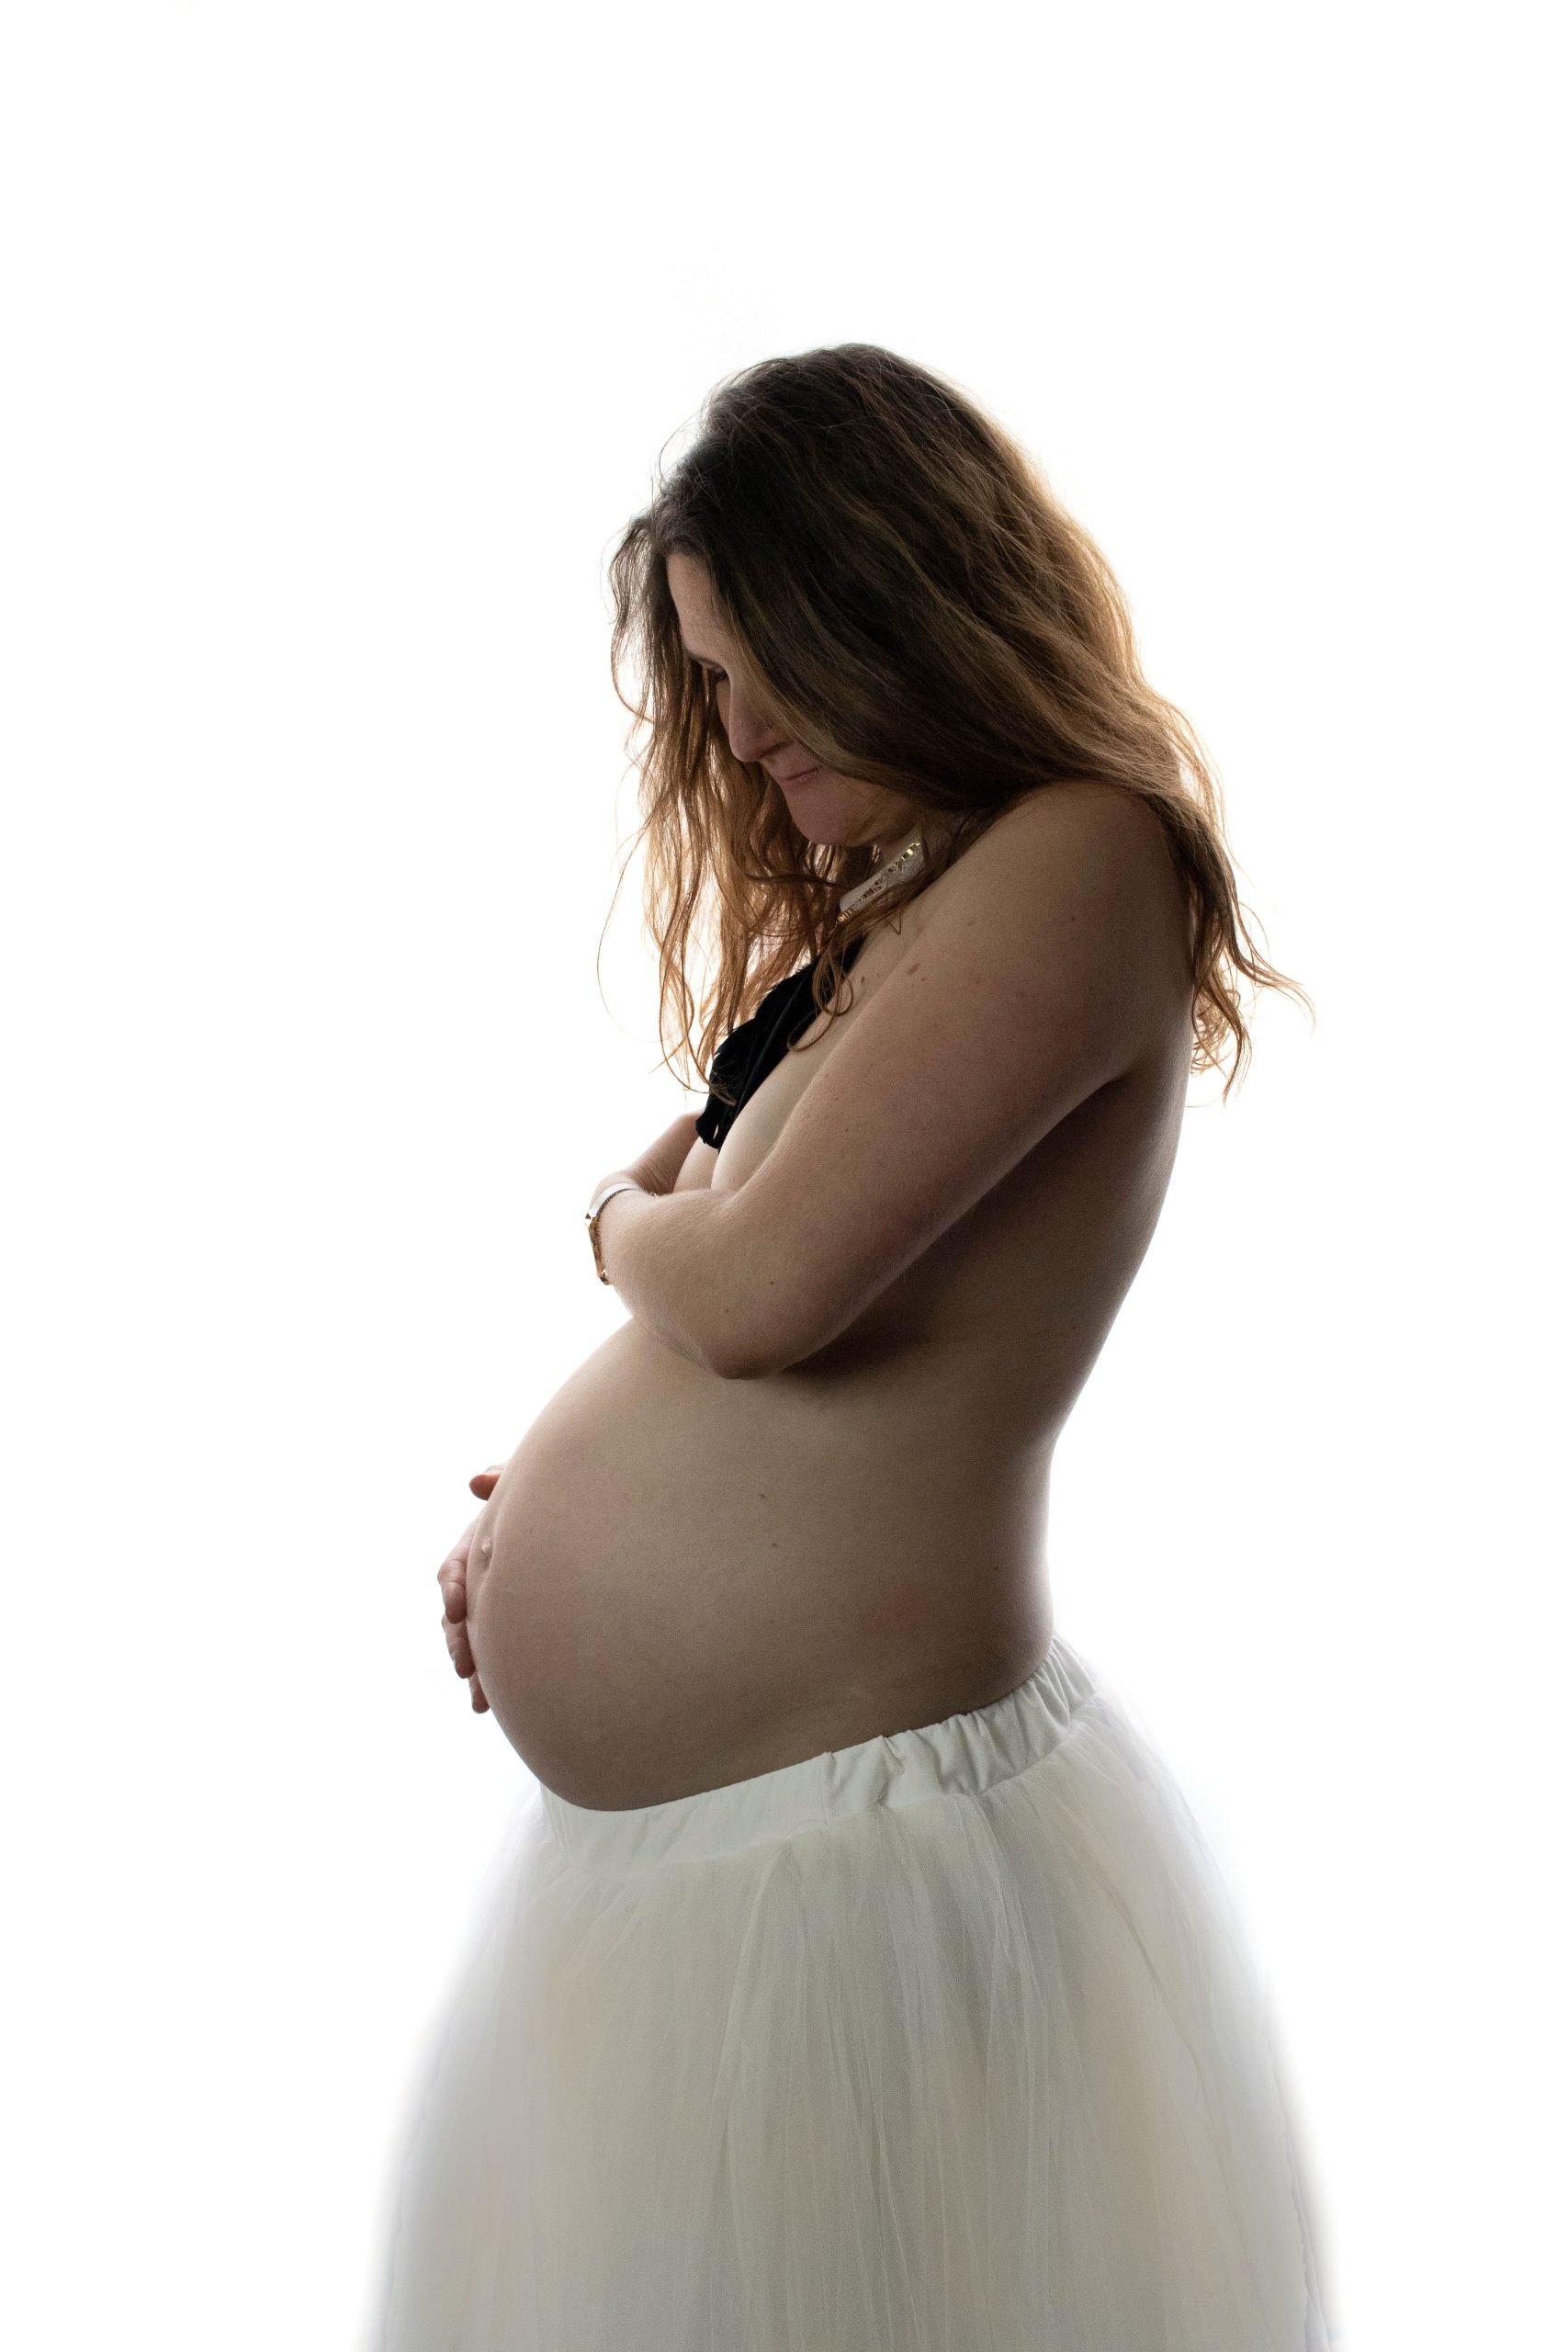 photographe grossesse femme enceinte photo contre-jour dénudé maternité